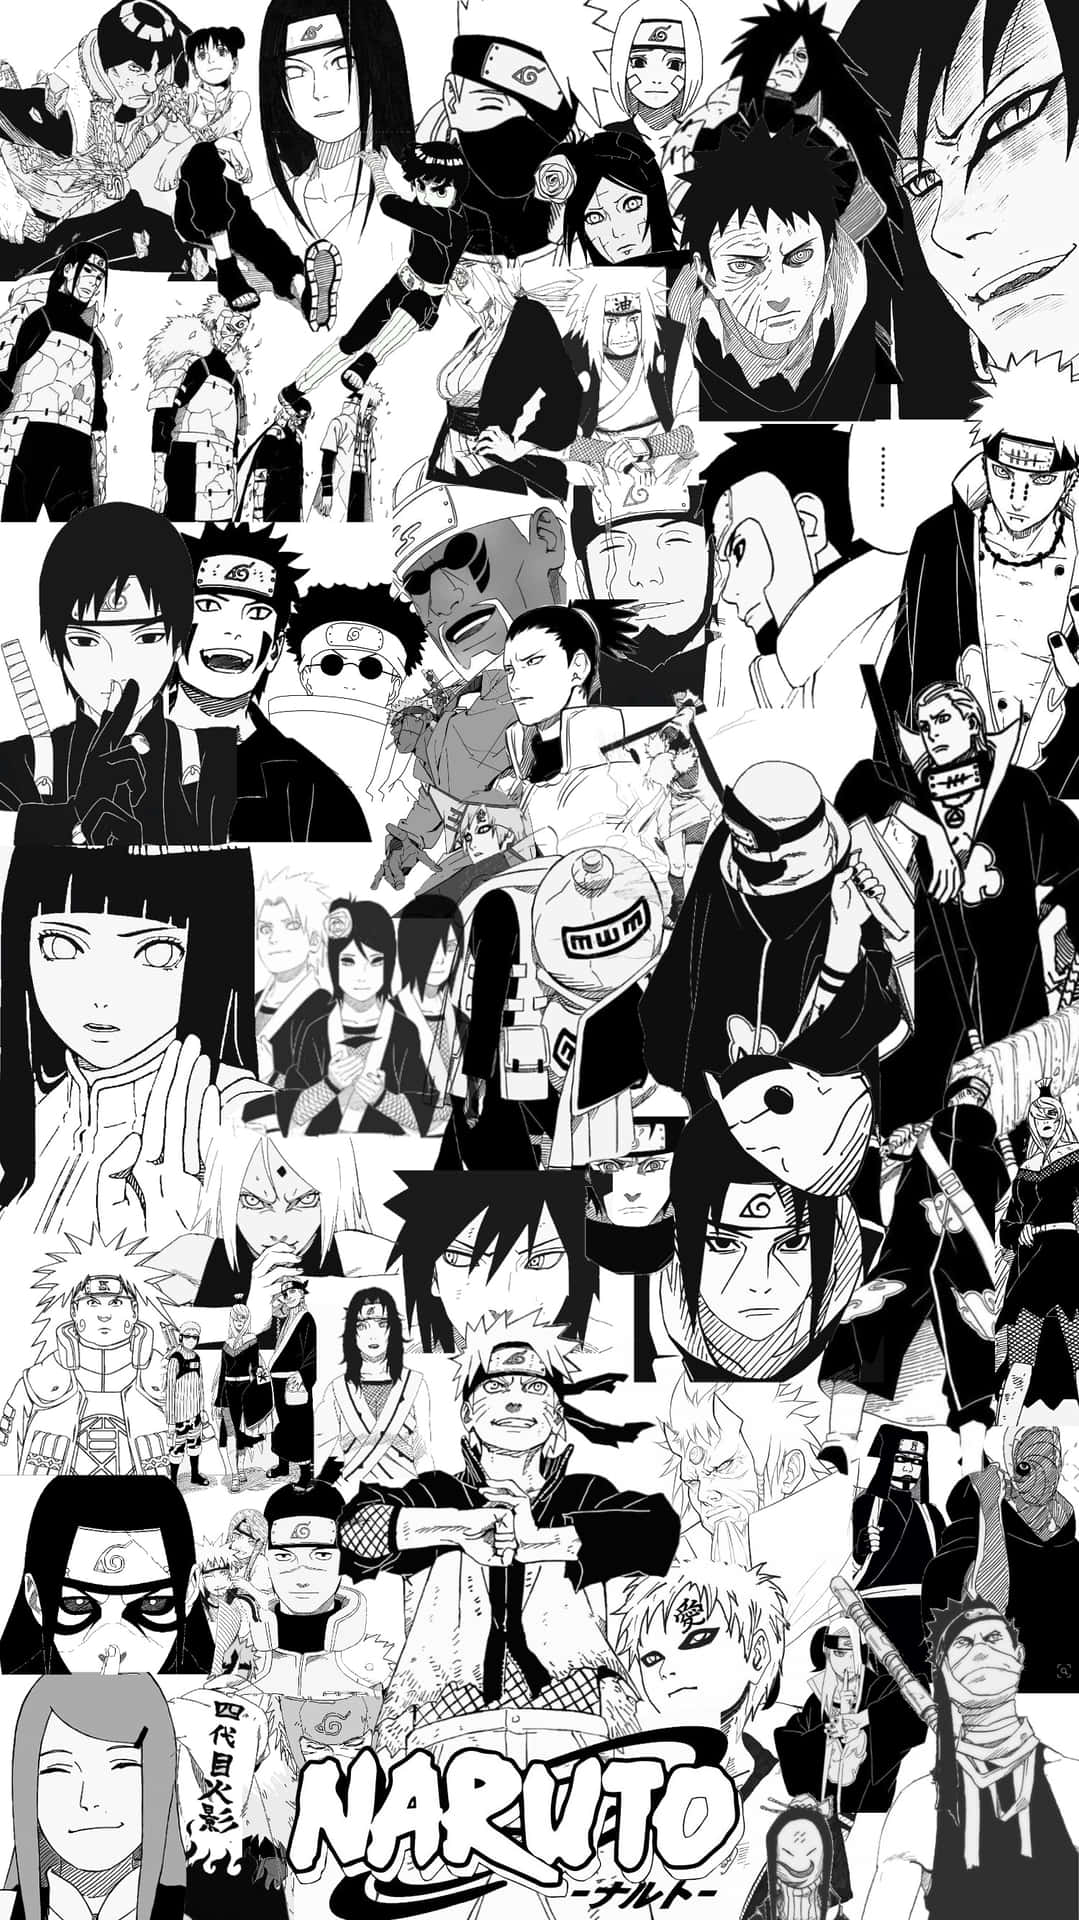 Enkollage Av Olika Anime Karaktärer Wallpaper